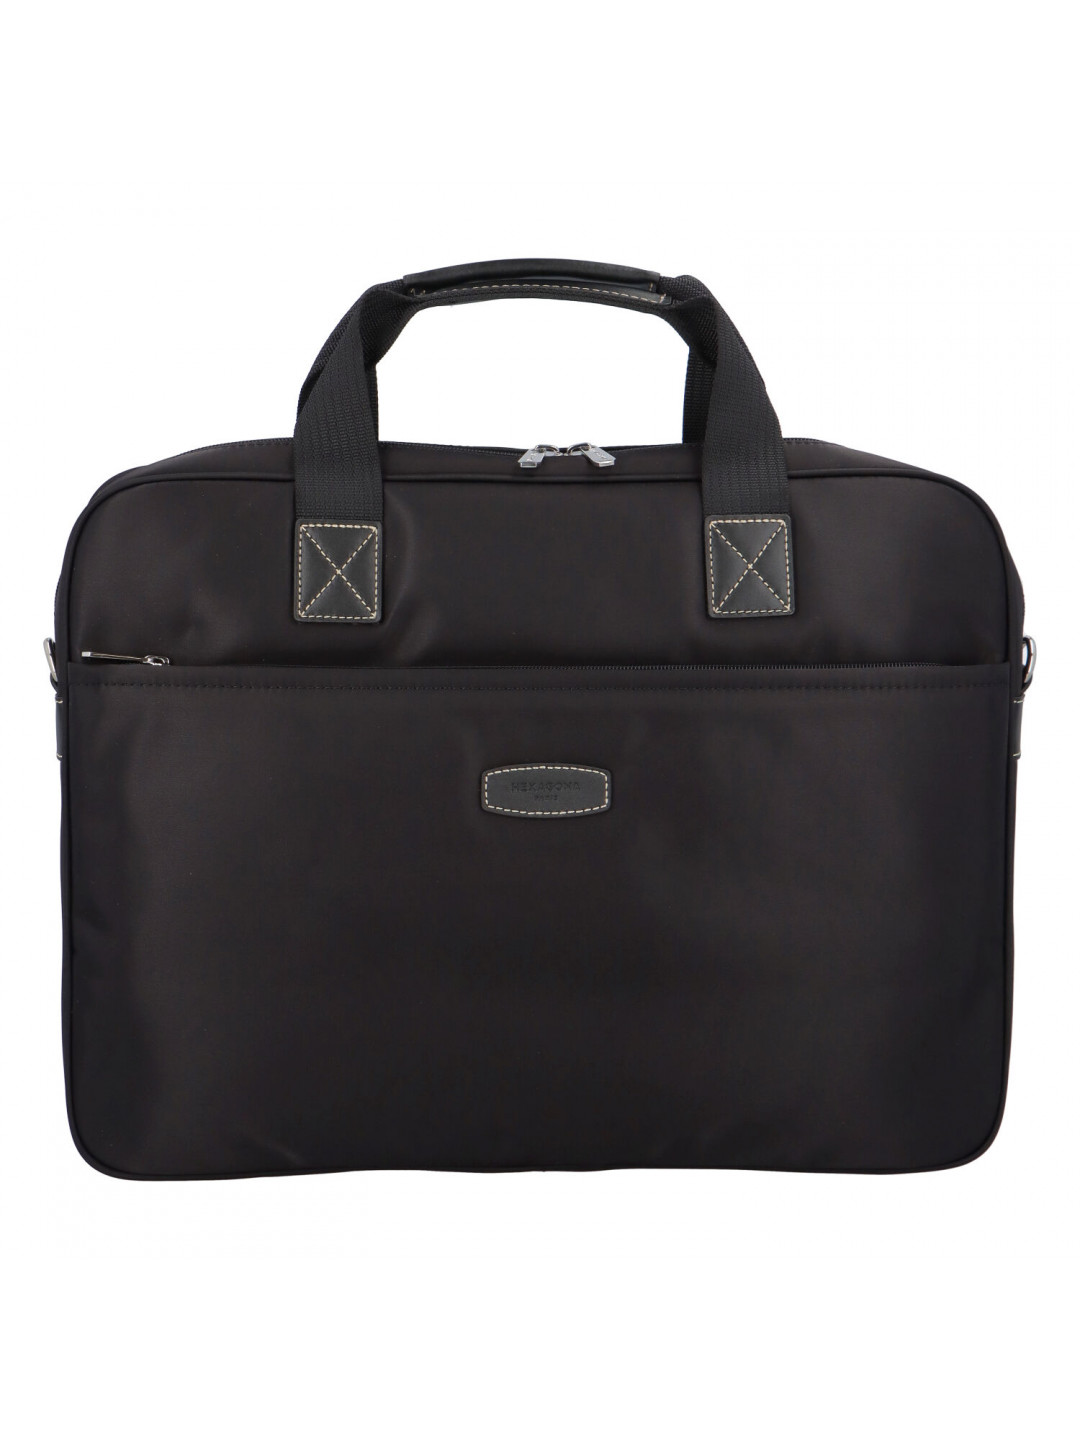 Luxusní taška na notebook černá – Hexagona 171176 A